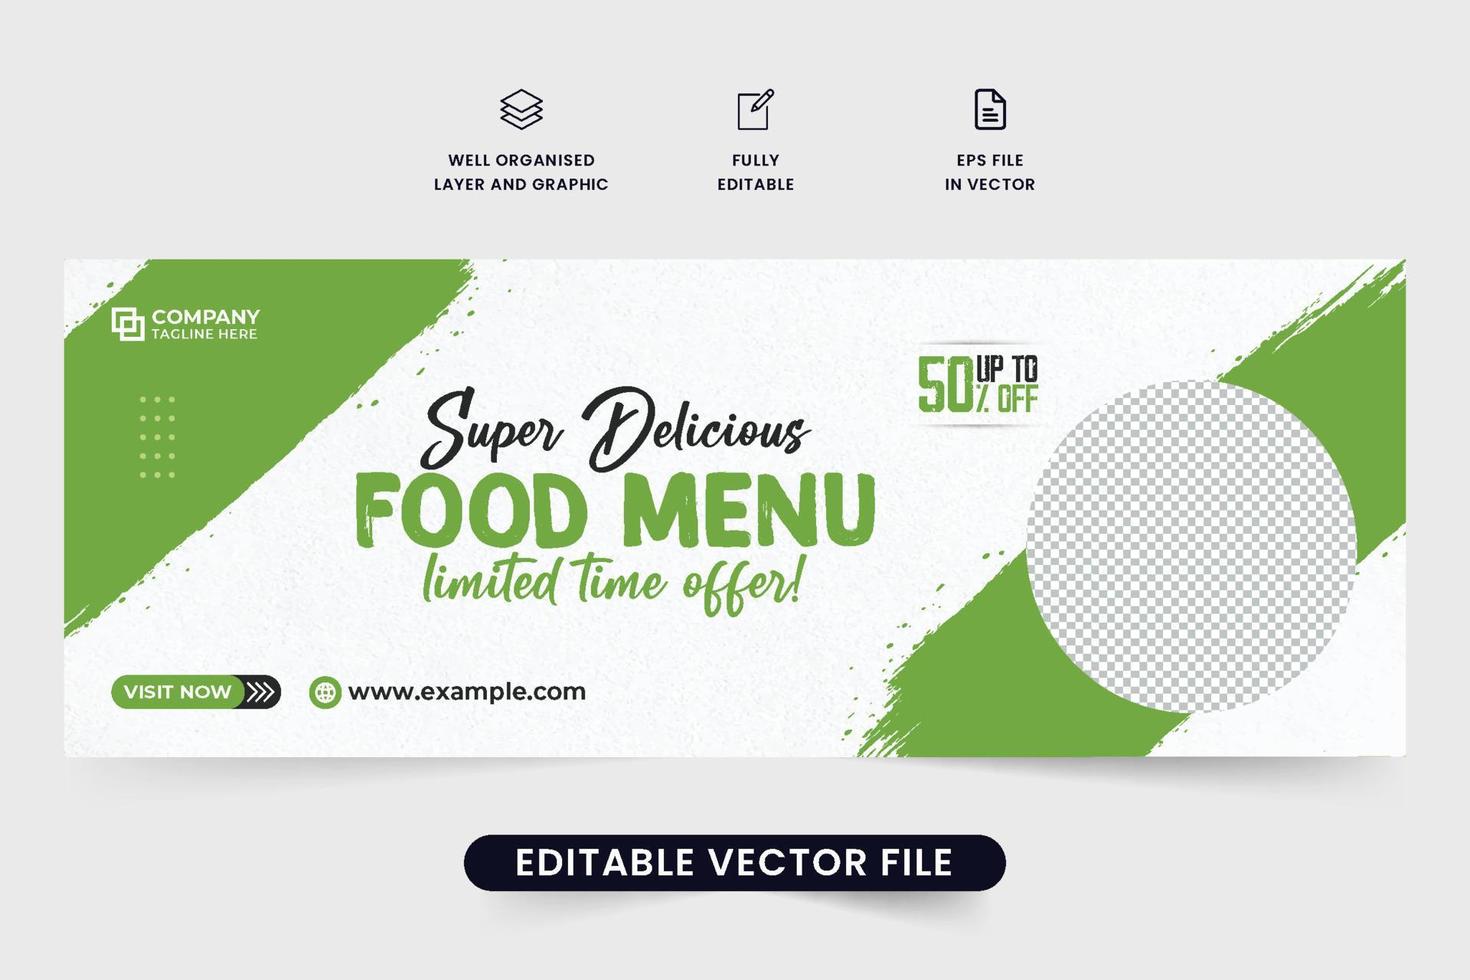 köstliches lebensmittel-promo-vorlagendesign mit grünem pinseleffekt. Werbebanner für spezielle Lebensmittel für die Social-Media-Cover des Restaurants. Lebensmittel kommerzieller Web-Banner-Vektor mit Foto-Platzhaltern. vektor